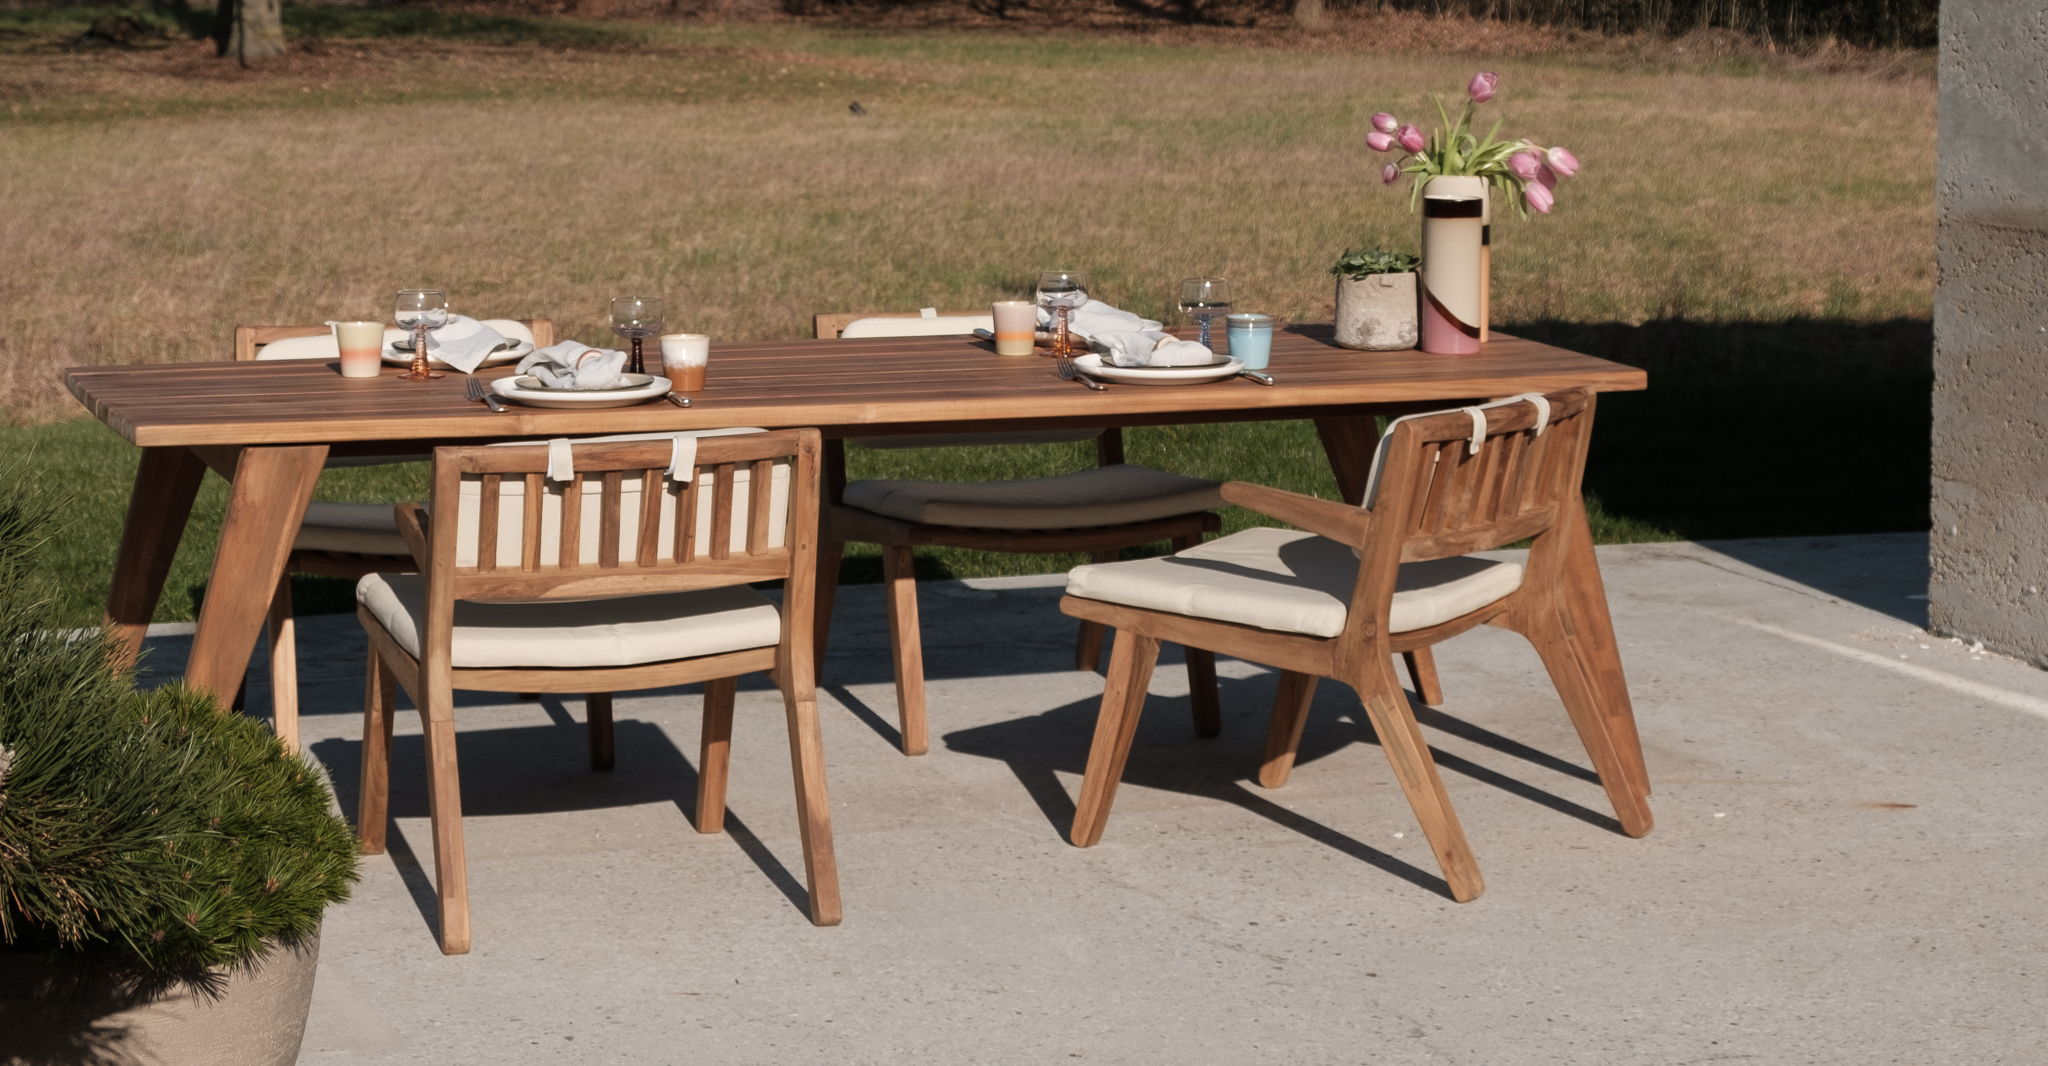 La pièce maîtresse de la collection Furnified outdoor : la table de salle à manger Sierra avec les chaises basses Zeno.